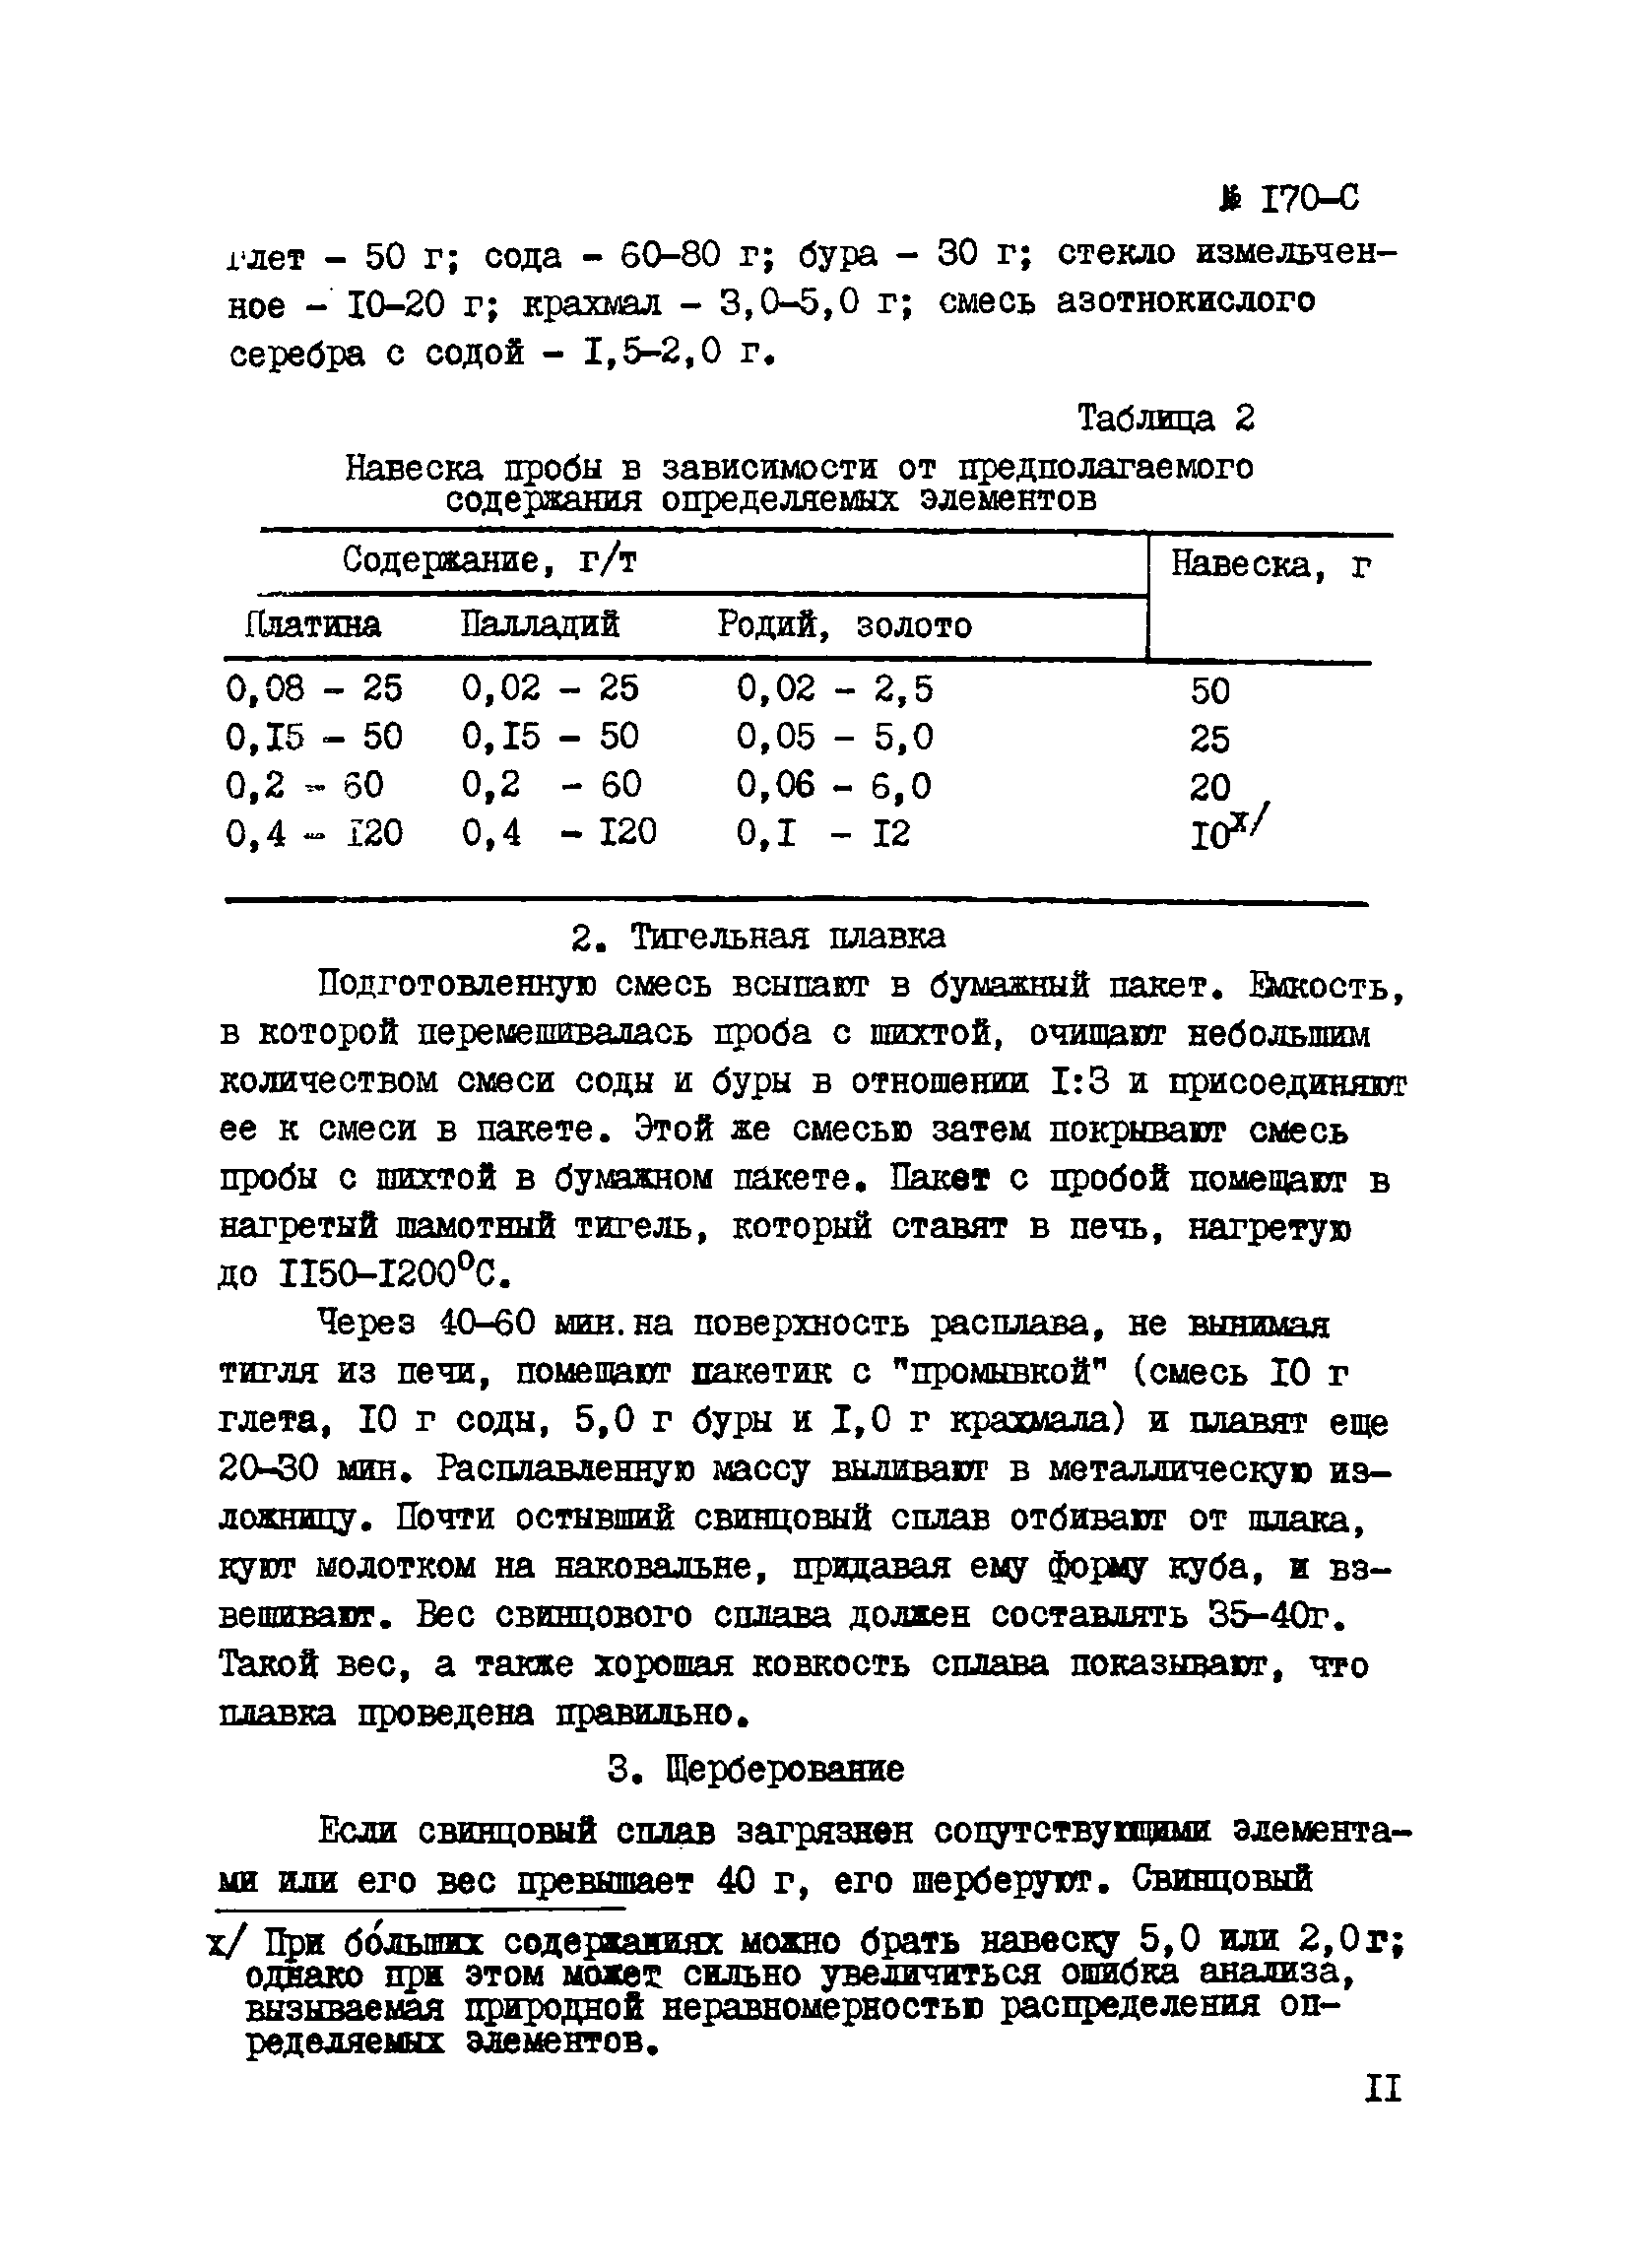 Инструкция НСАМ 170-С